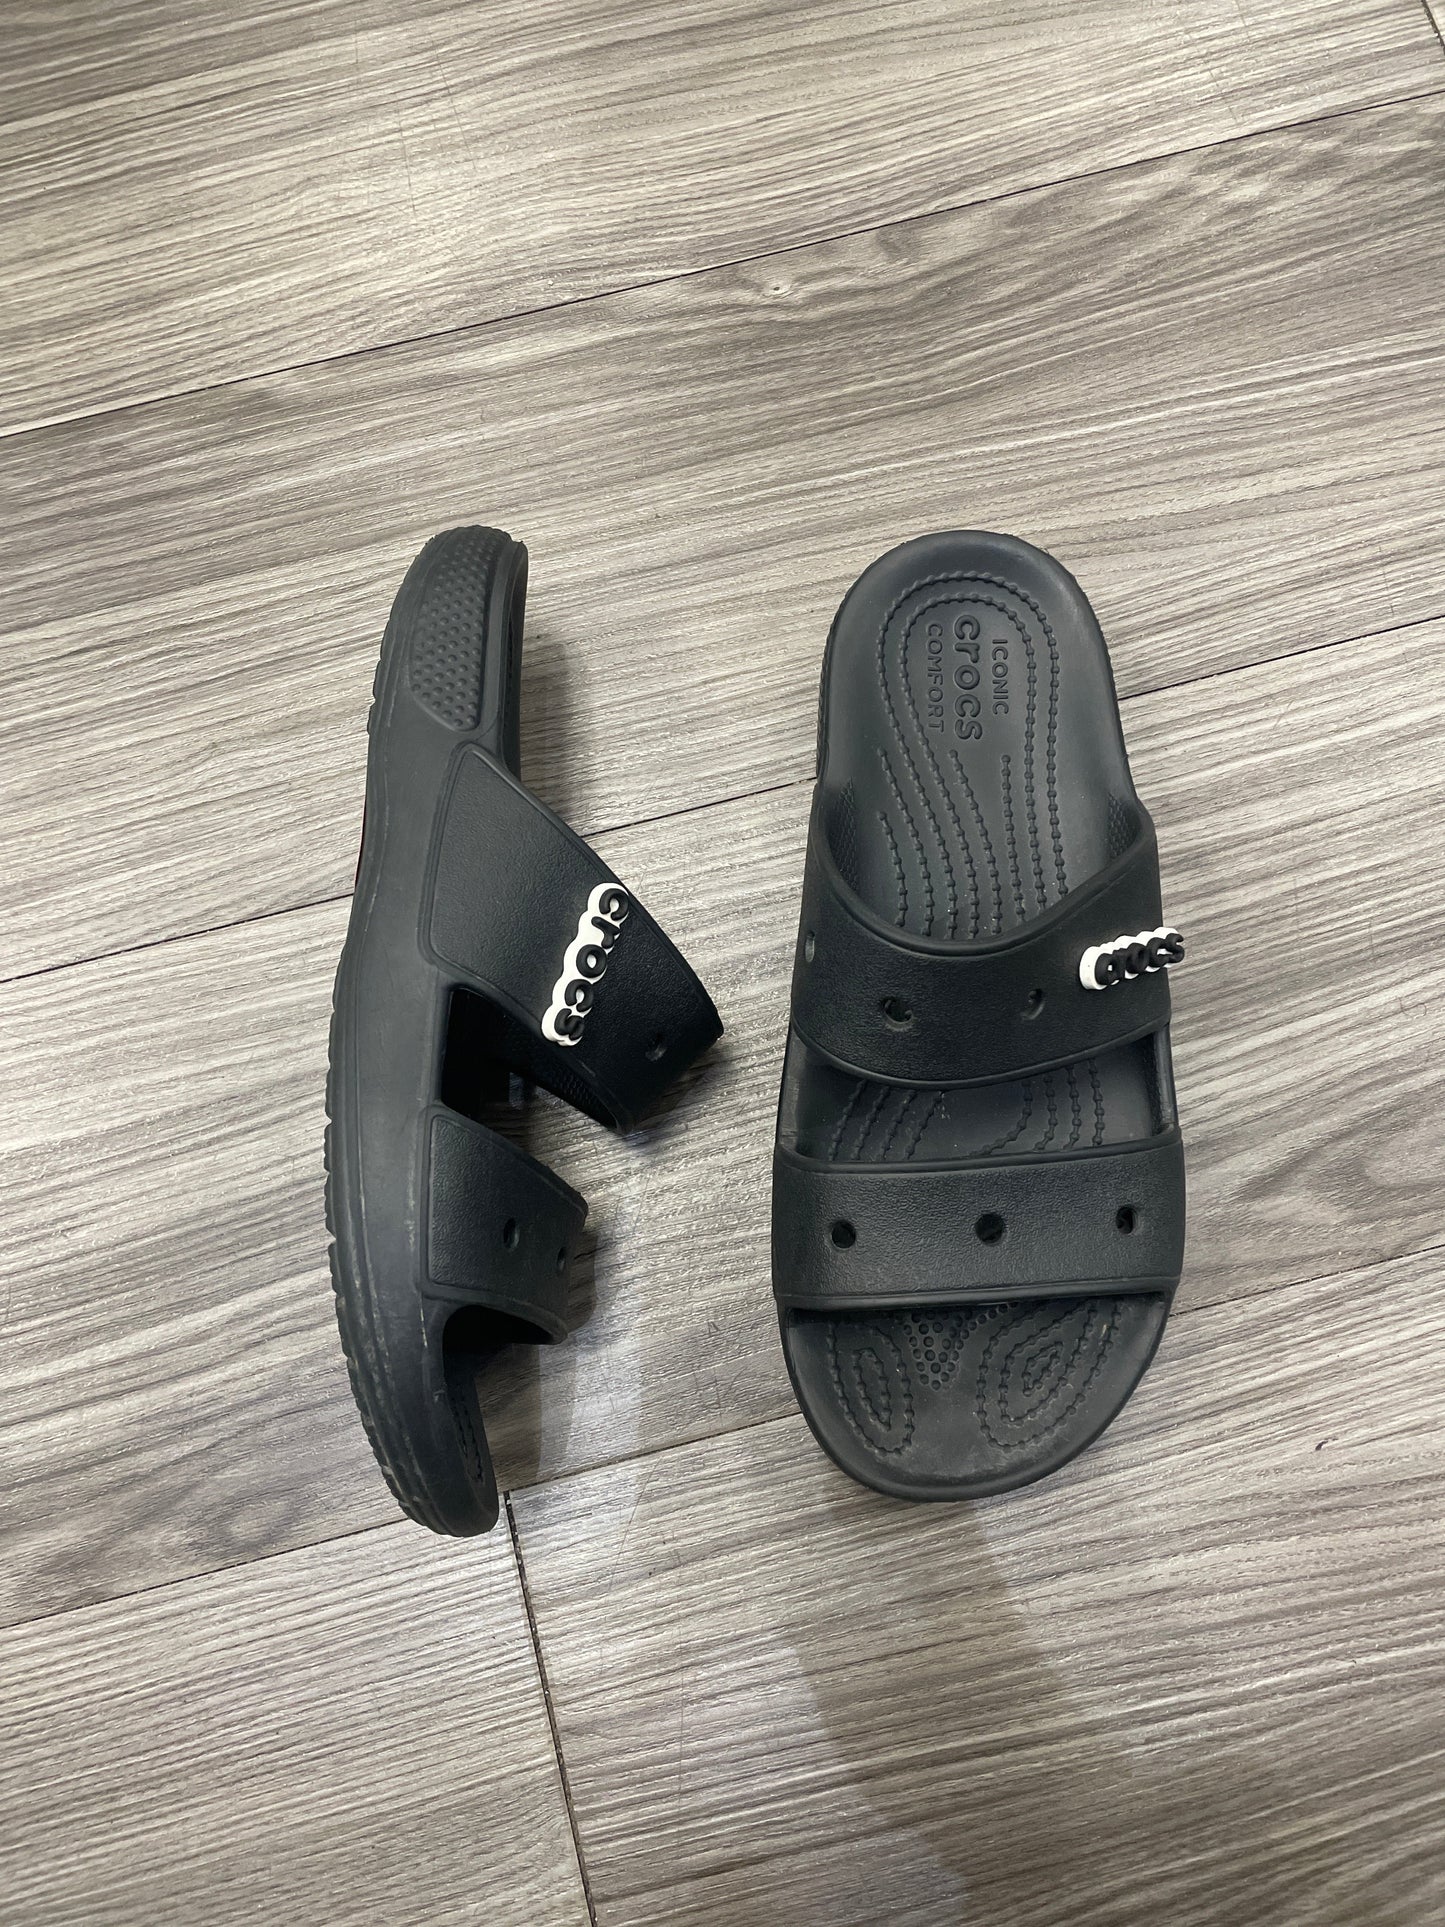 Sandals Flats By Crocs  Size: 9